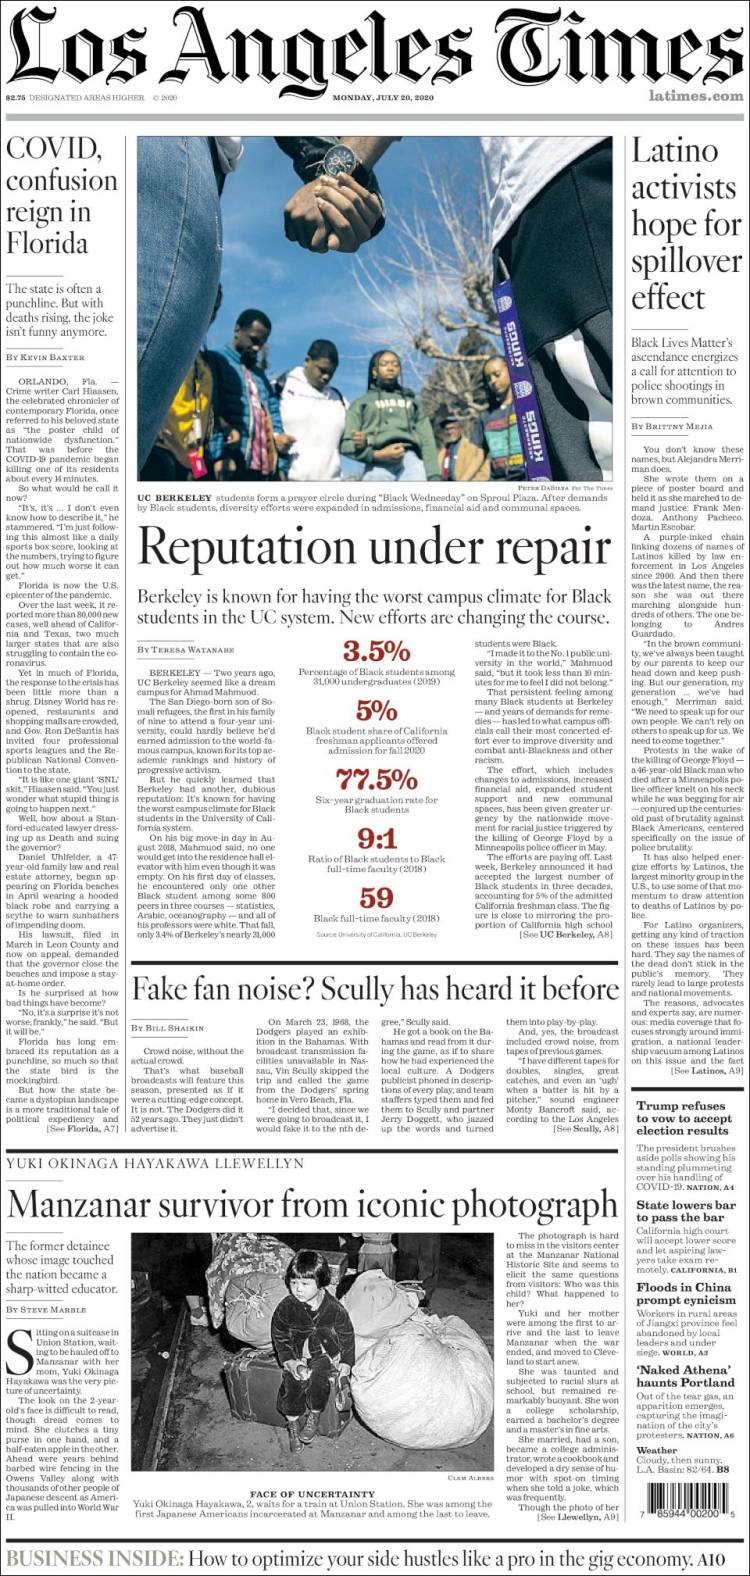 صفحه اول روزنامه لس آنجلس تایمز/ کووید؛ سرگشتگی بر فلوریدا حکم می راند